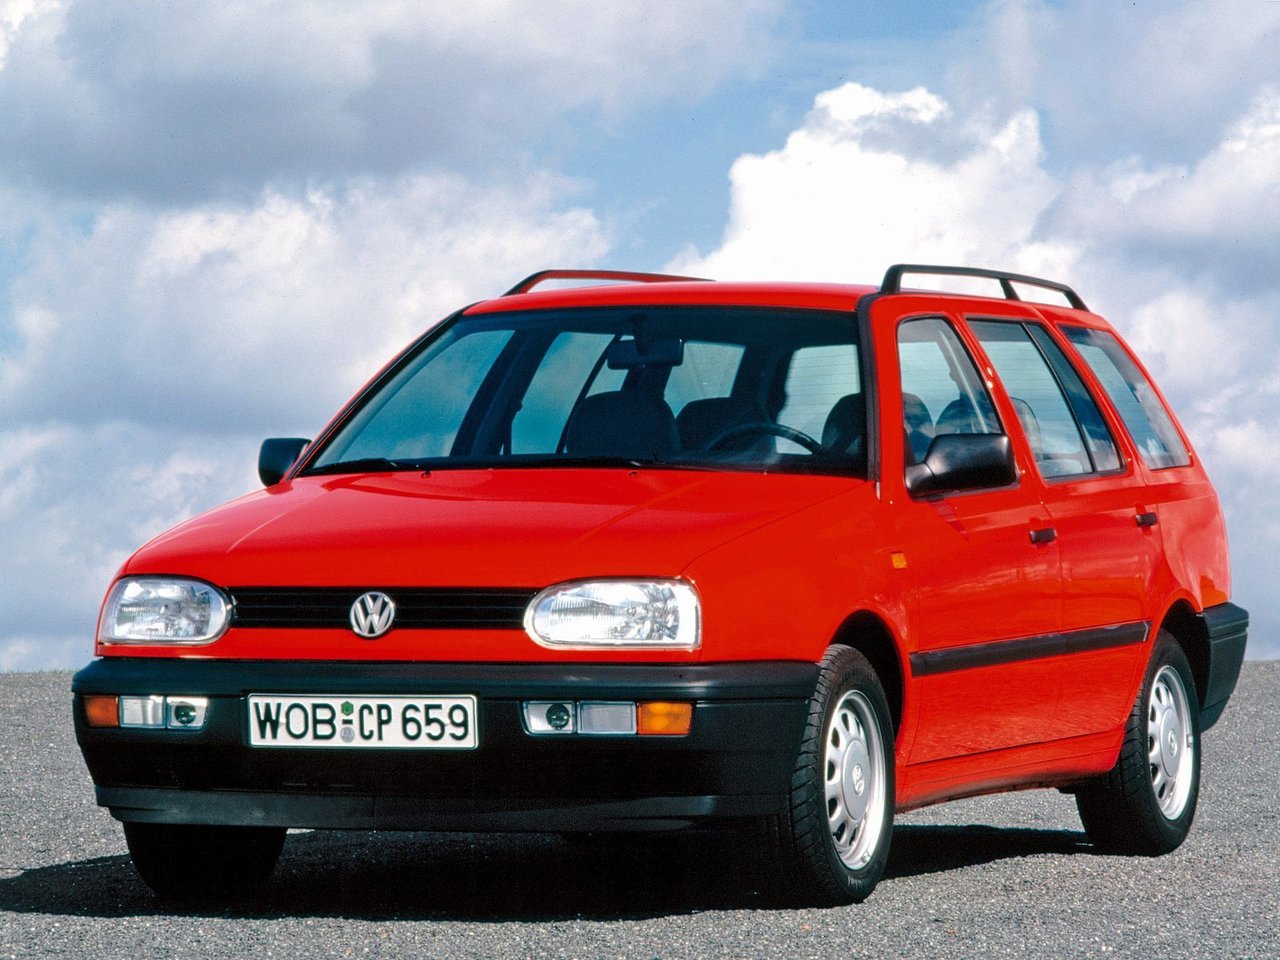 Расход газа девяти комплектаций универсала пять дверей Volkswagen Golf. Разница стоимости заправки газом и бензином. Автономный пробег до и после установки ГБО.